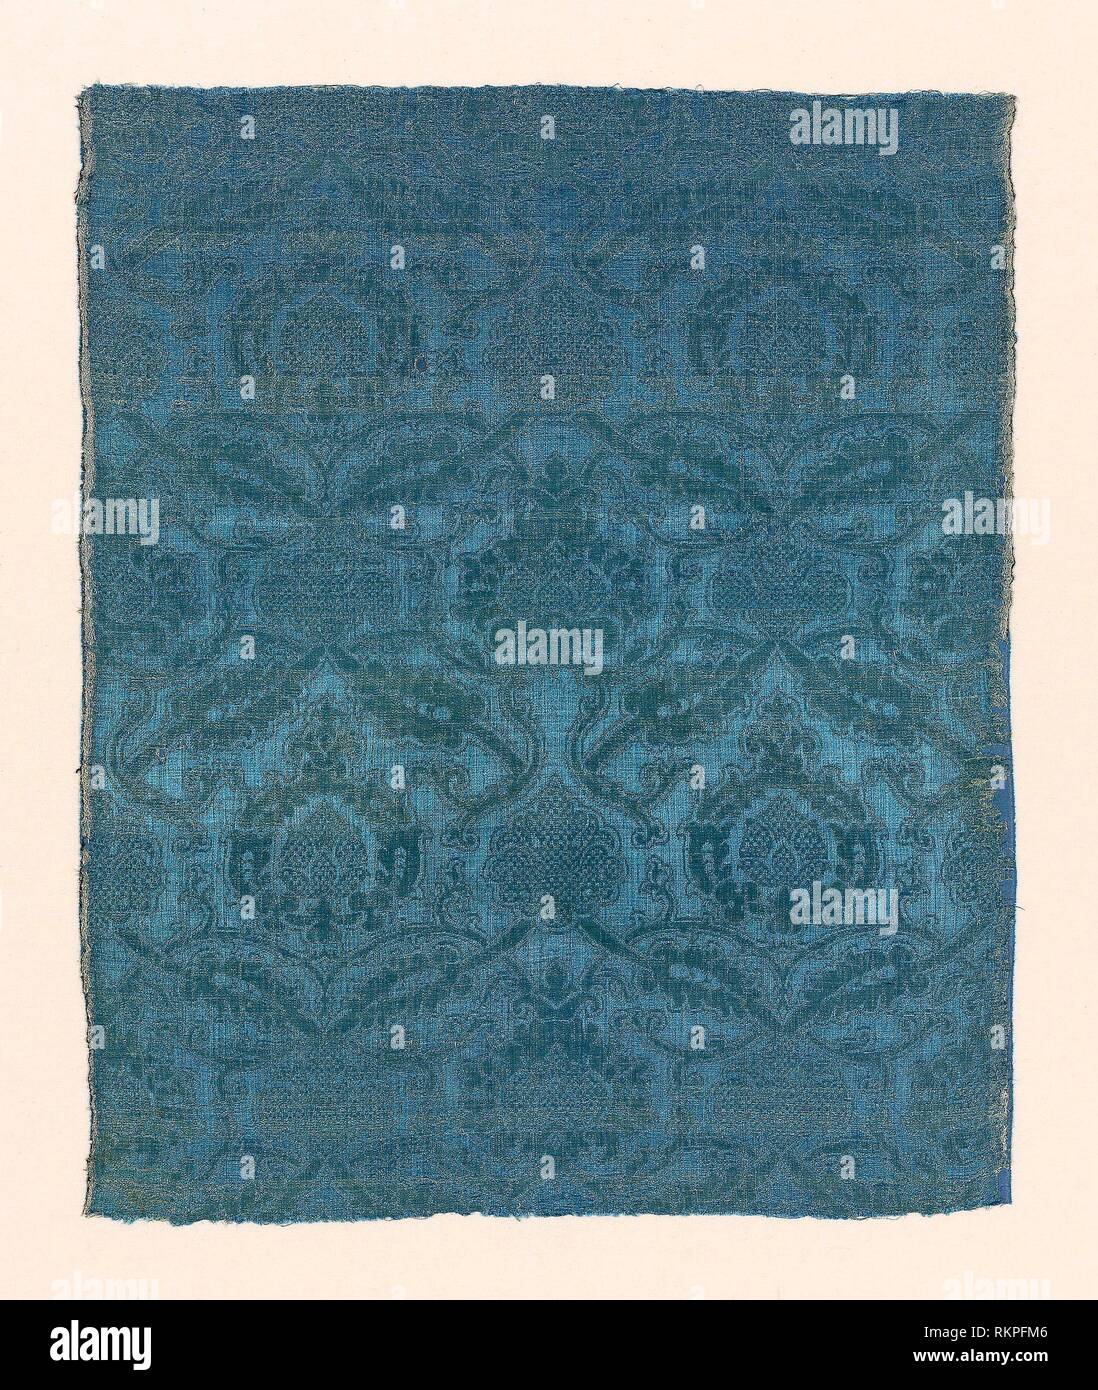 Panel - 1525/75 - Spanien - Herkunft: Spanien, Datum: 1525 - 1575, Mittel: Seide, 4:1 satin Damast Webart, Abmessungen: 69,2 x 57,1 cm (27 1/4 x 22 1/2 in.) Stockfoto